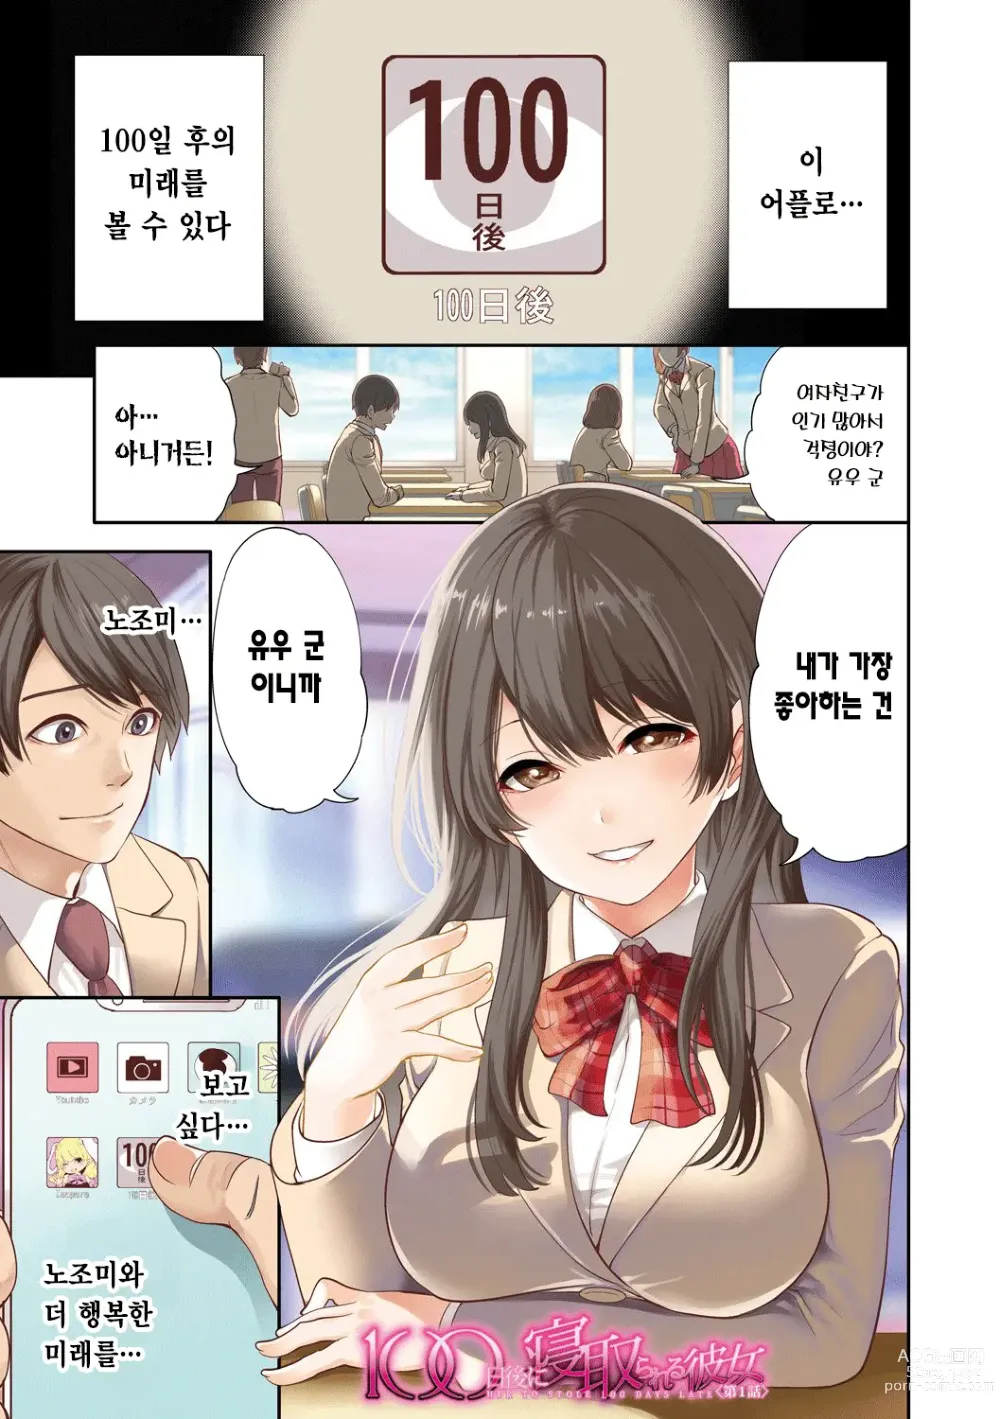 Page 3 of manga 100일 후에 네토라레 당하는 여자친구